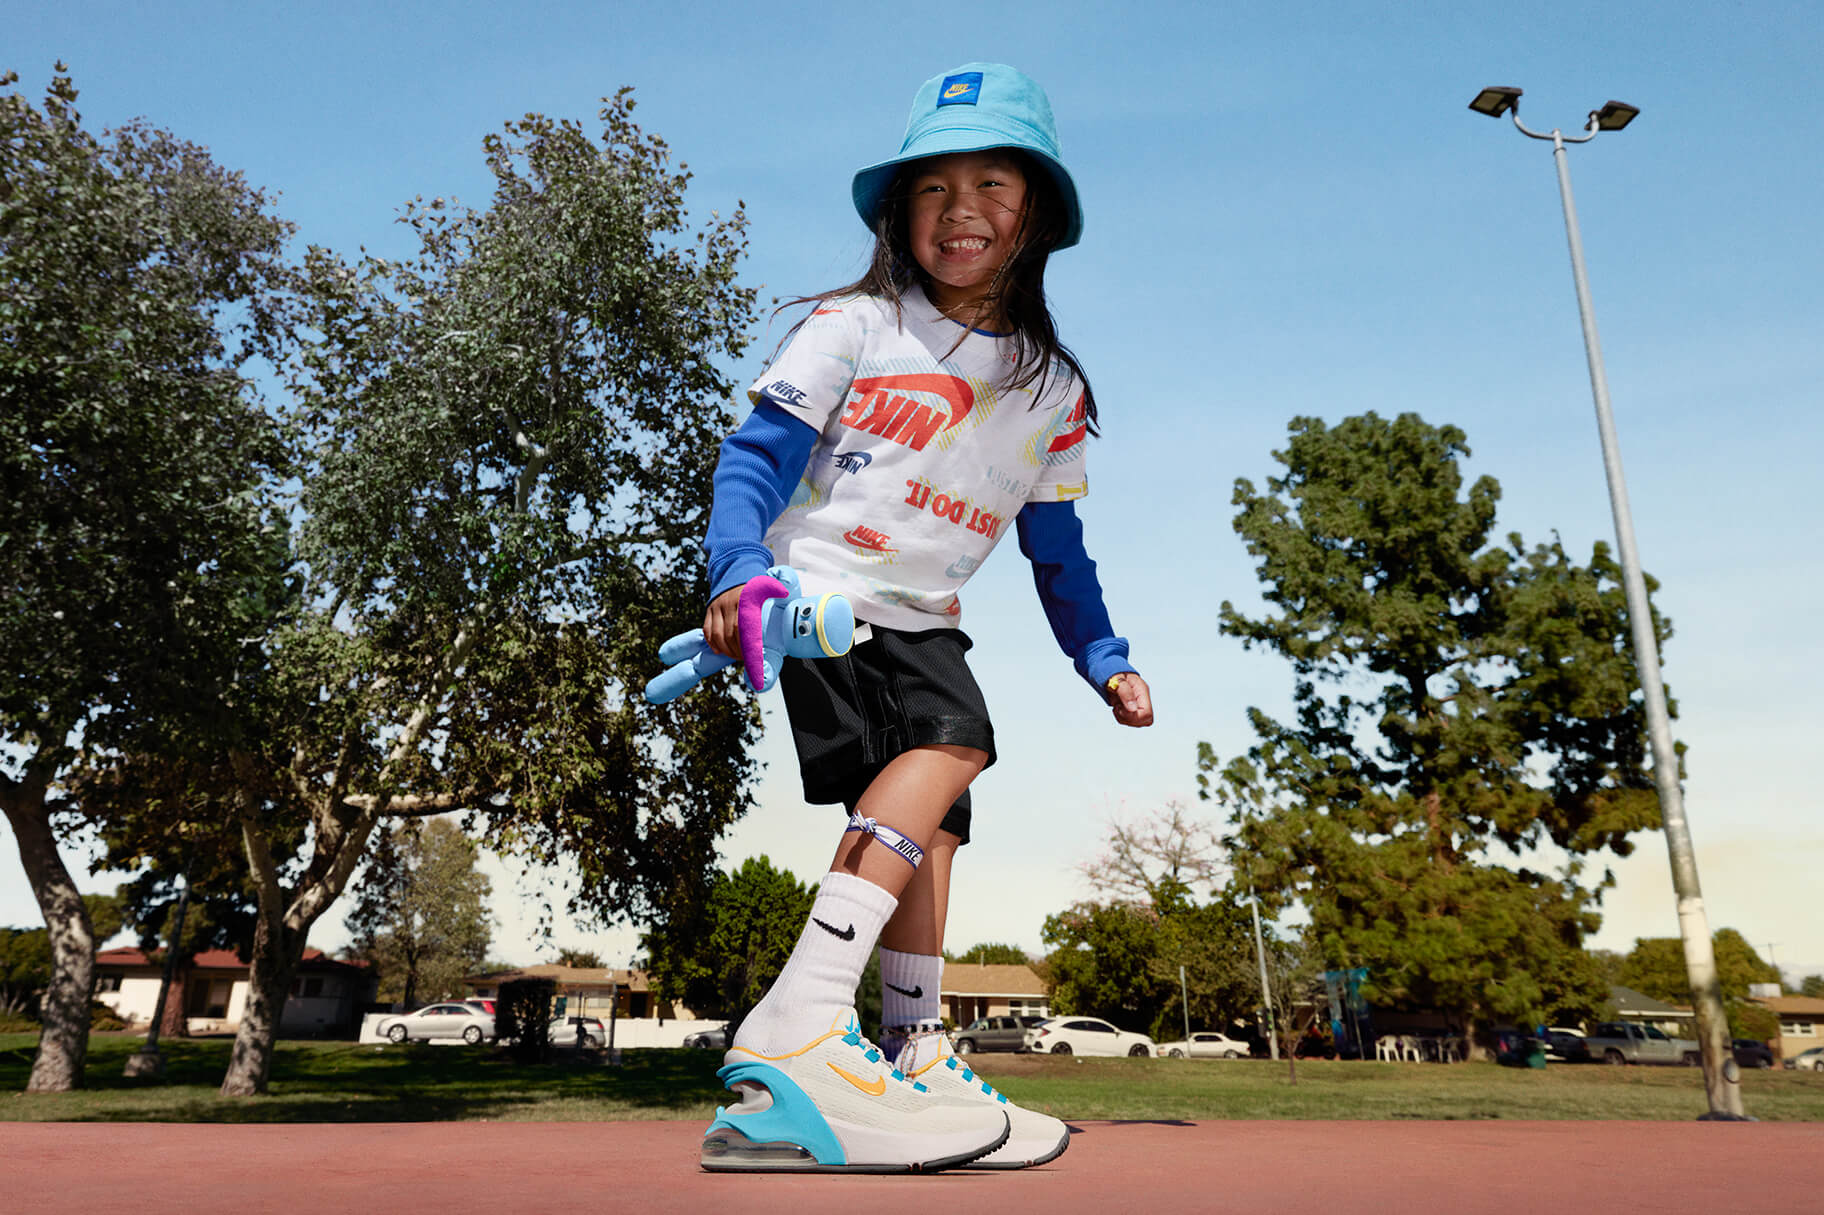 Les millors sabatilles Nike per a nen/a